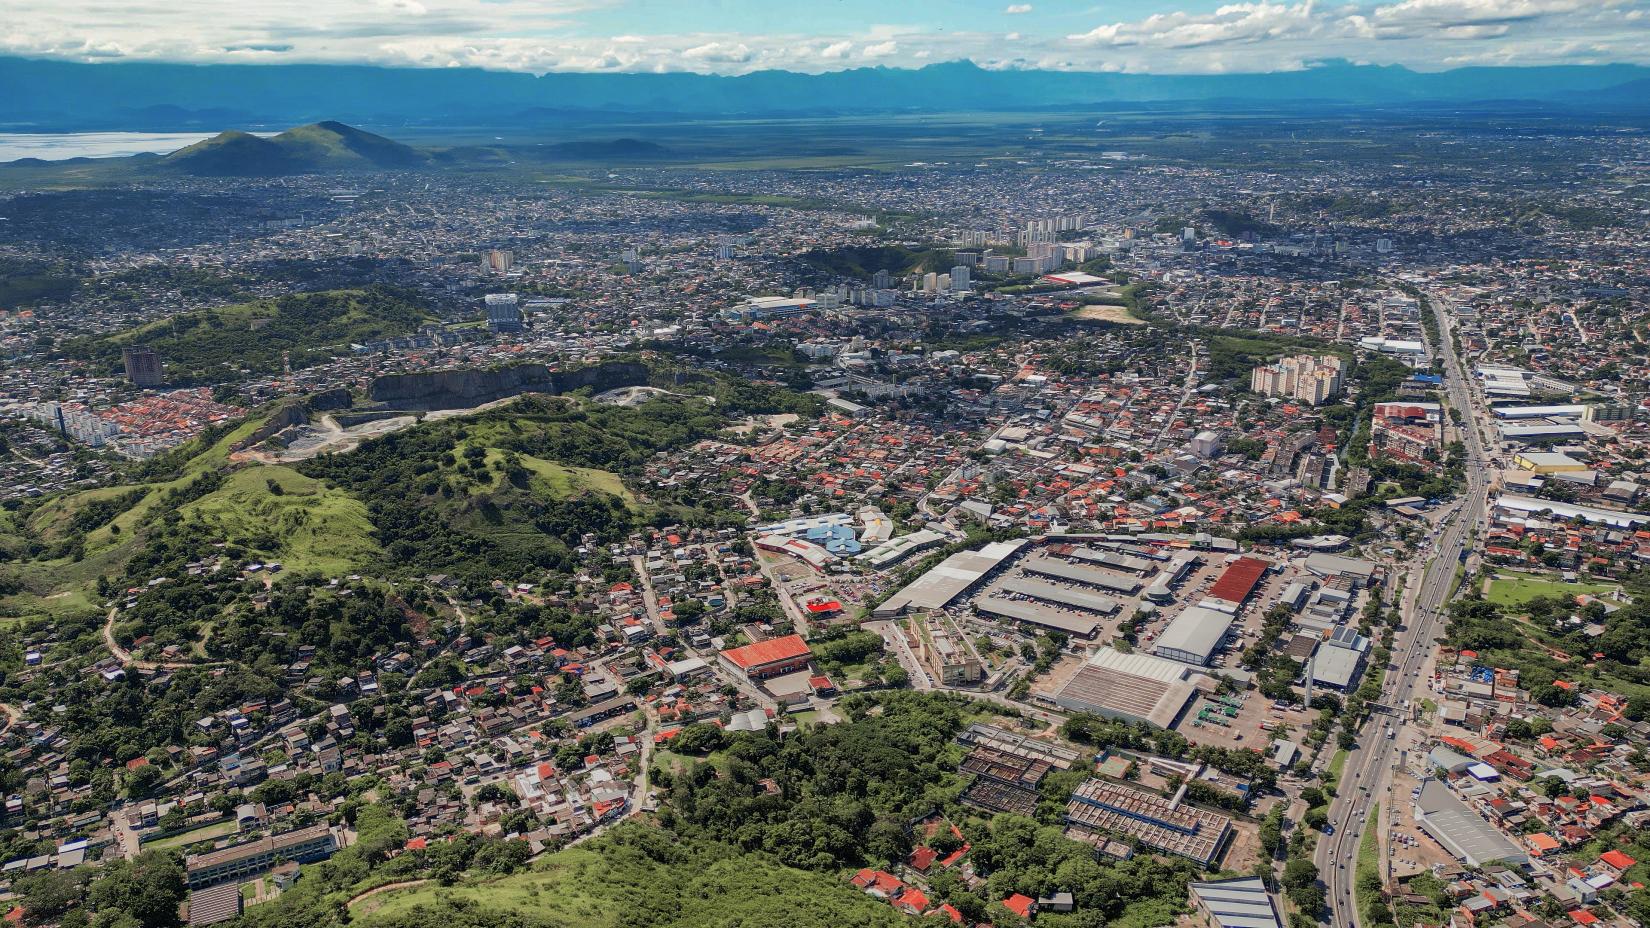 Vista aérea da cidade de São Gonçalo, na Região Metropolitana do Rio de Janeiro. Foto: © Henrique Maciel